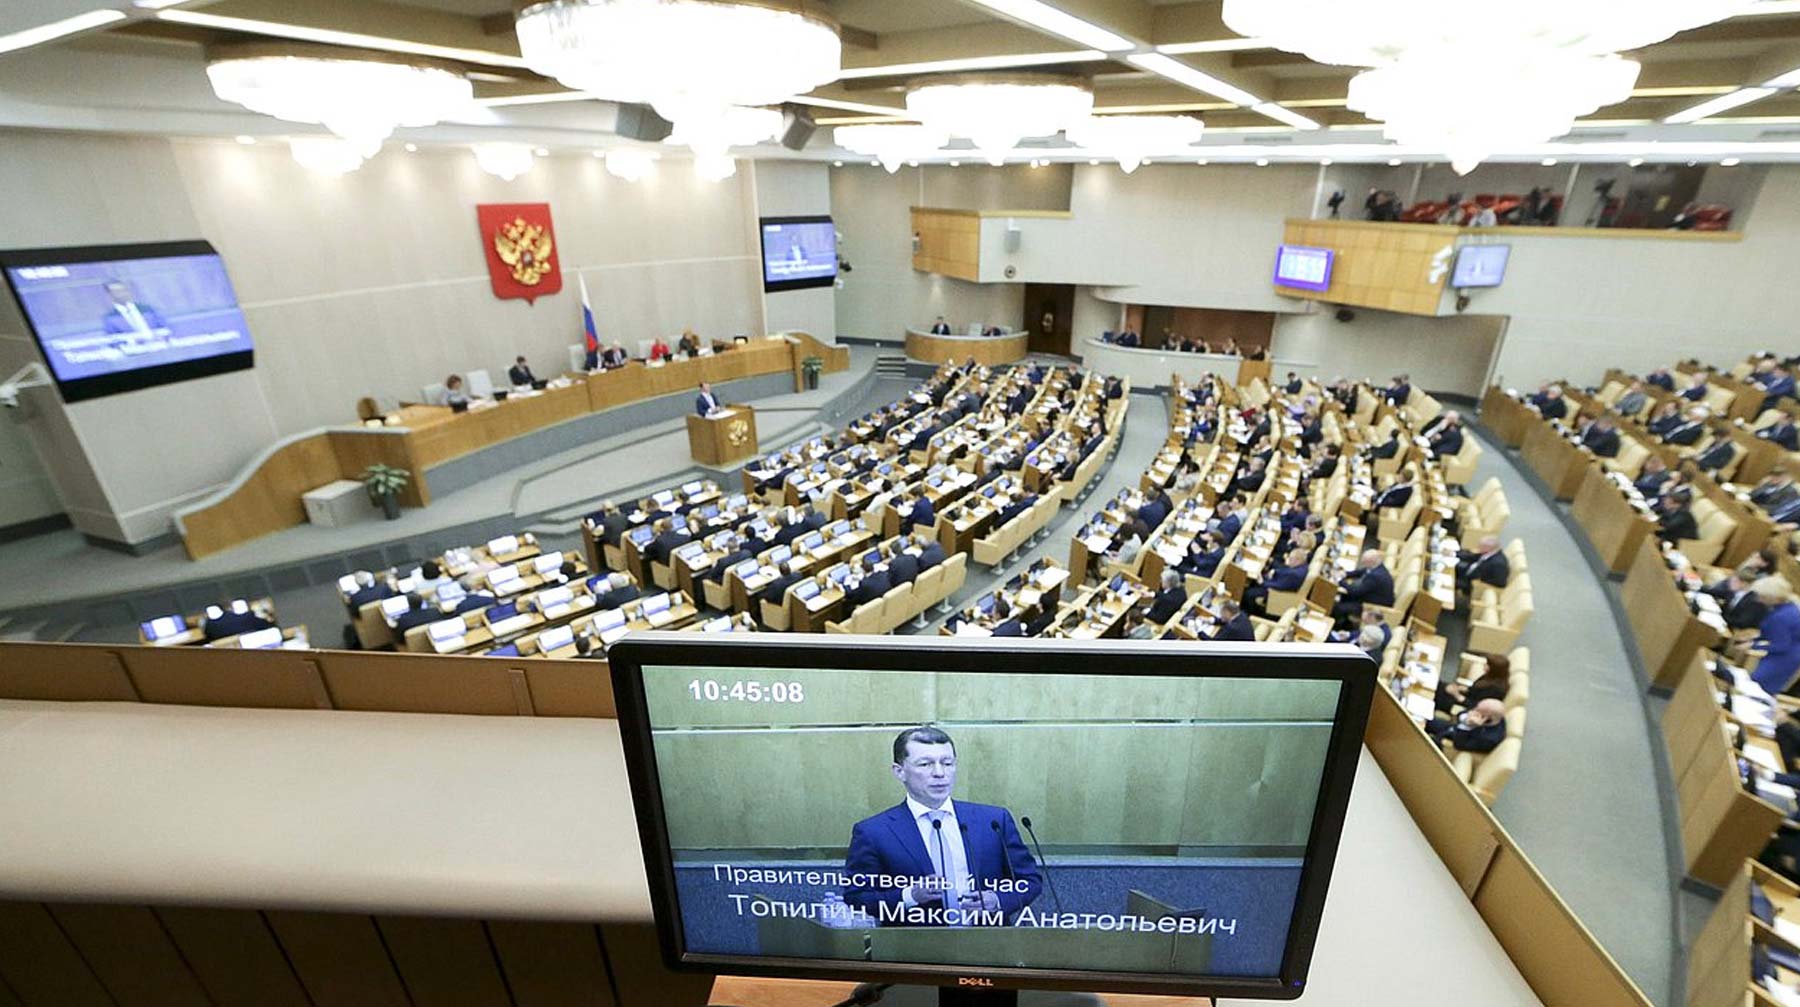 Максим Топилин представил депутатам меры по поддержке семей с детьми, повышению уровня жизни и доходов россиян Фото: © duma.gov.ru